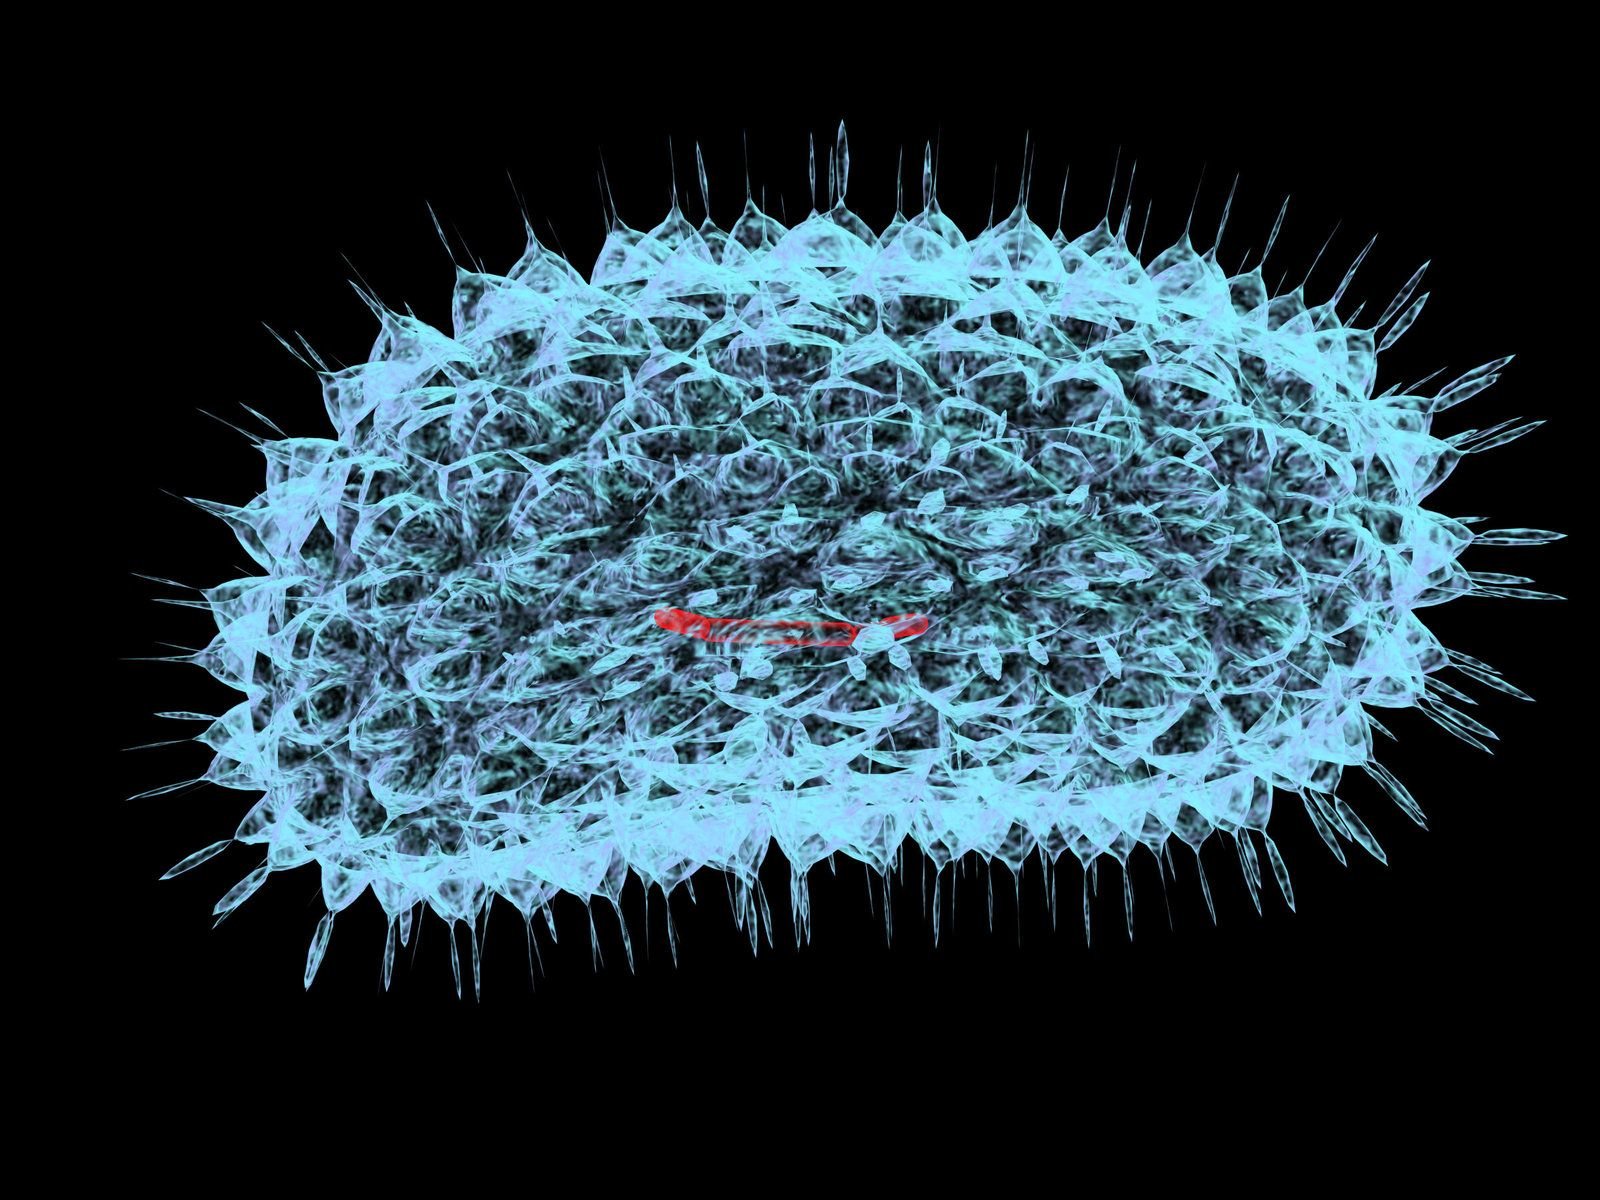 Вирус споры грибов. Бактерия коронавируса под микроскопом. Микробы бактерии вирусы под микроскопом. Микроб коронавируса под микроскопом. Вирус ковид микробиология.